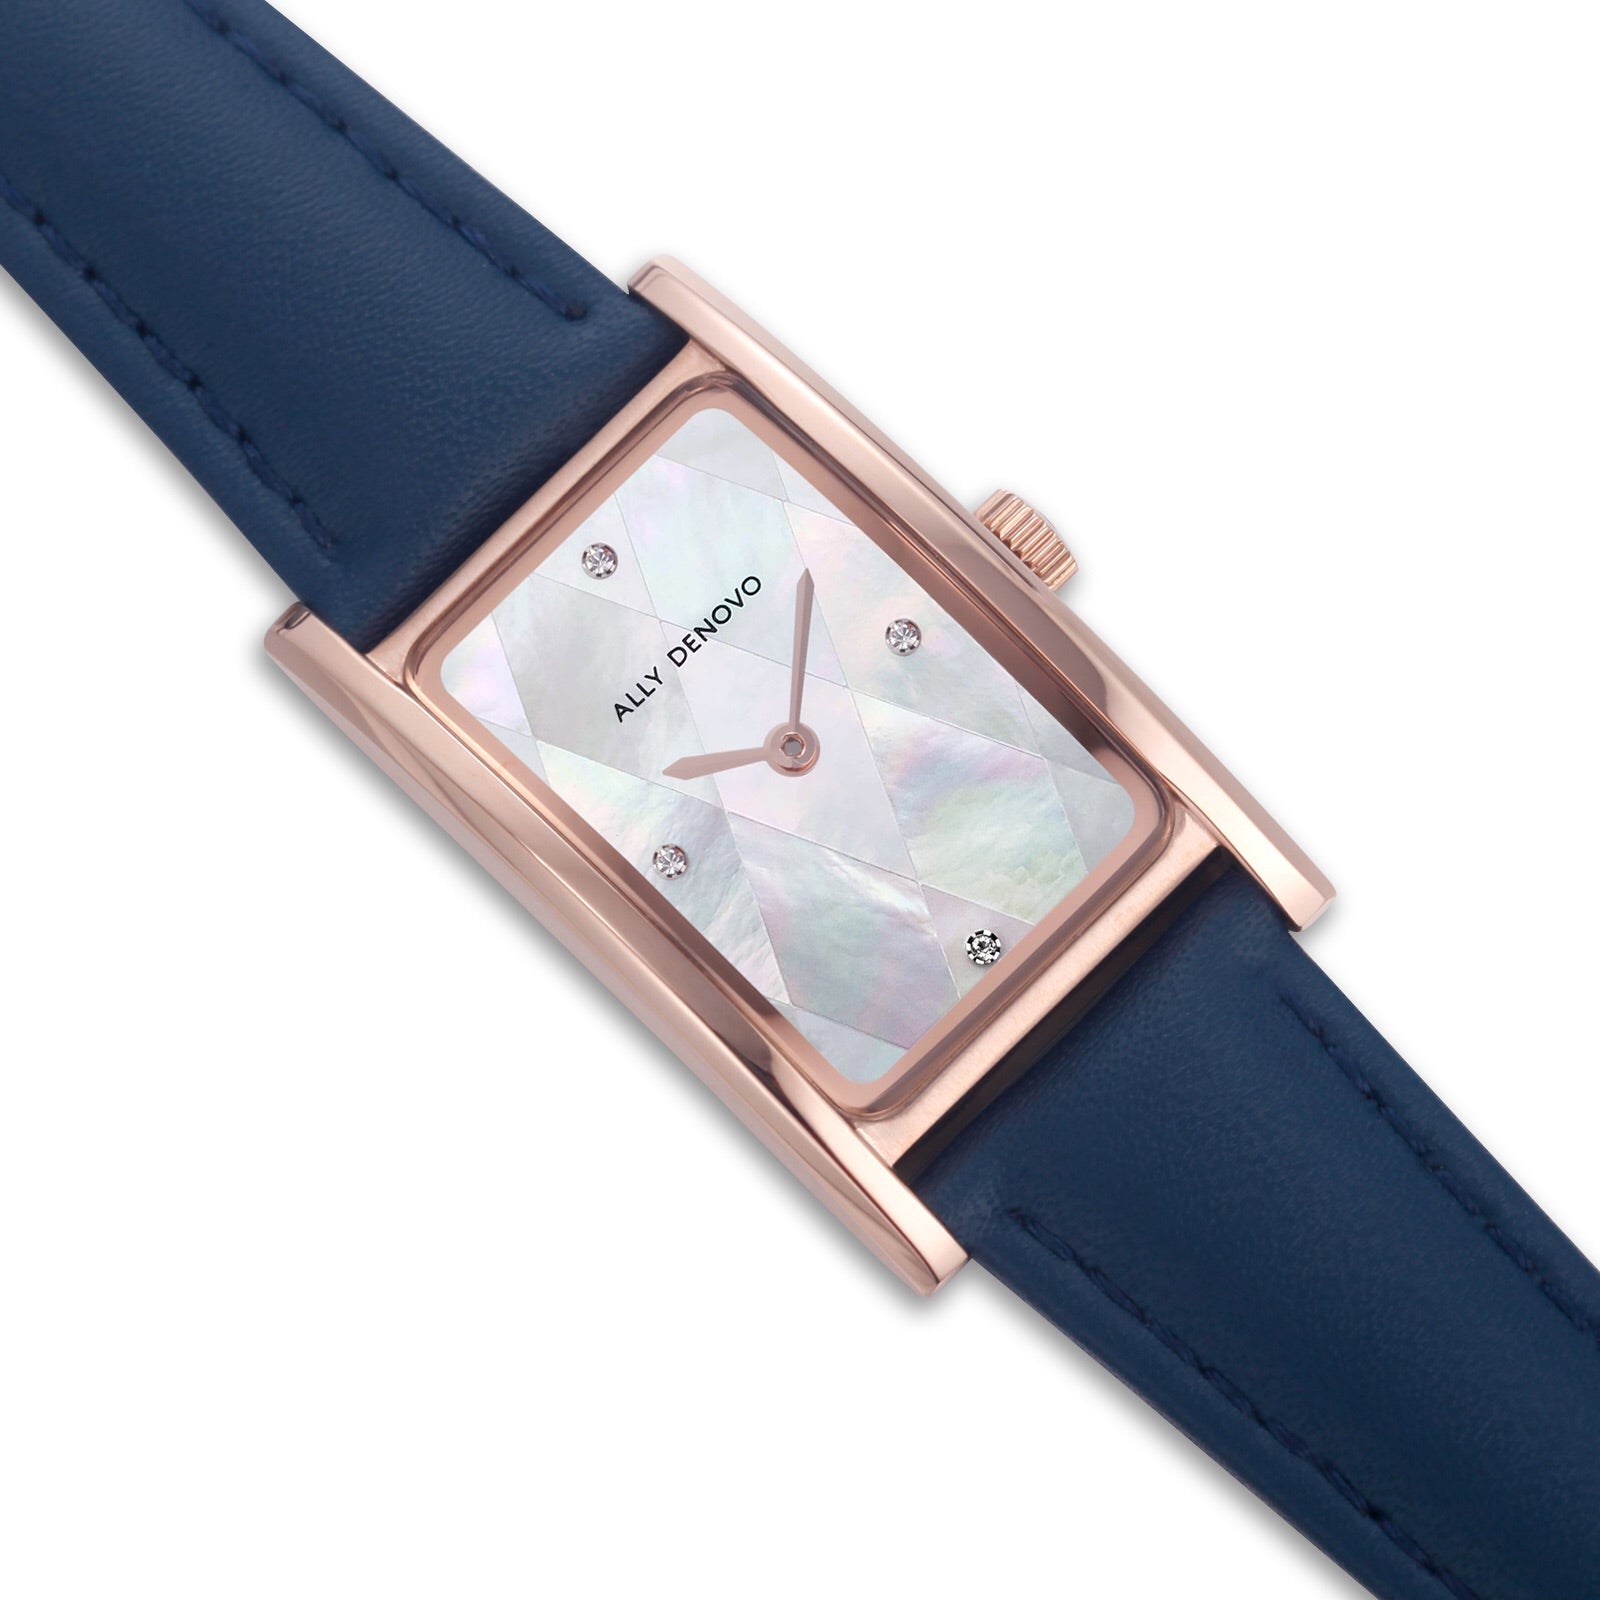 【限量頂級方形琉璃錶鍊禮盒】珍珠白菱玫瑰金框海軍藍手錶 限時贈送 銀製手鍊